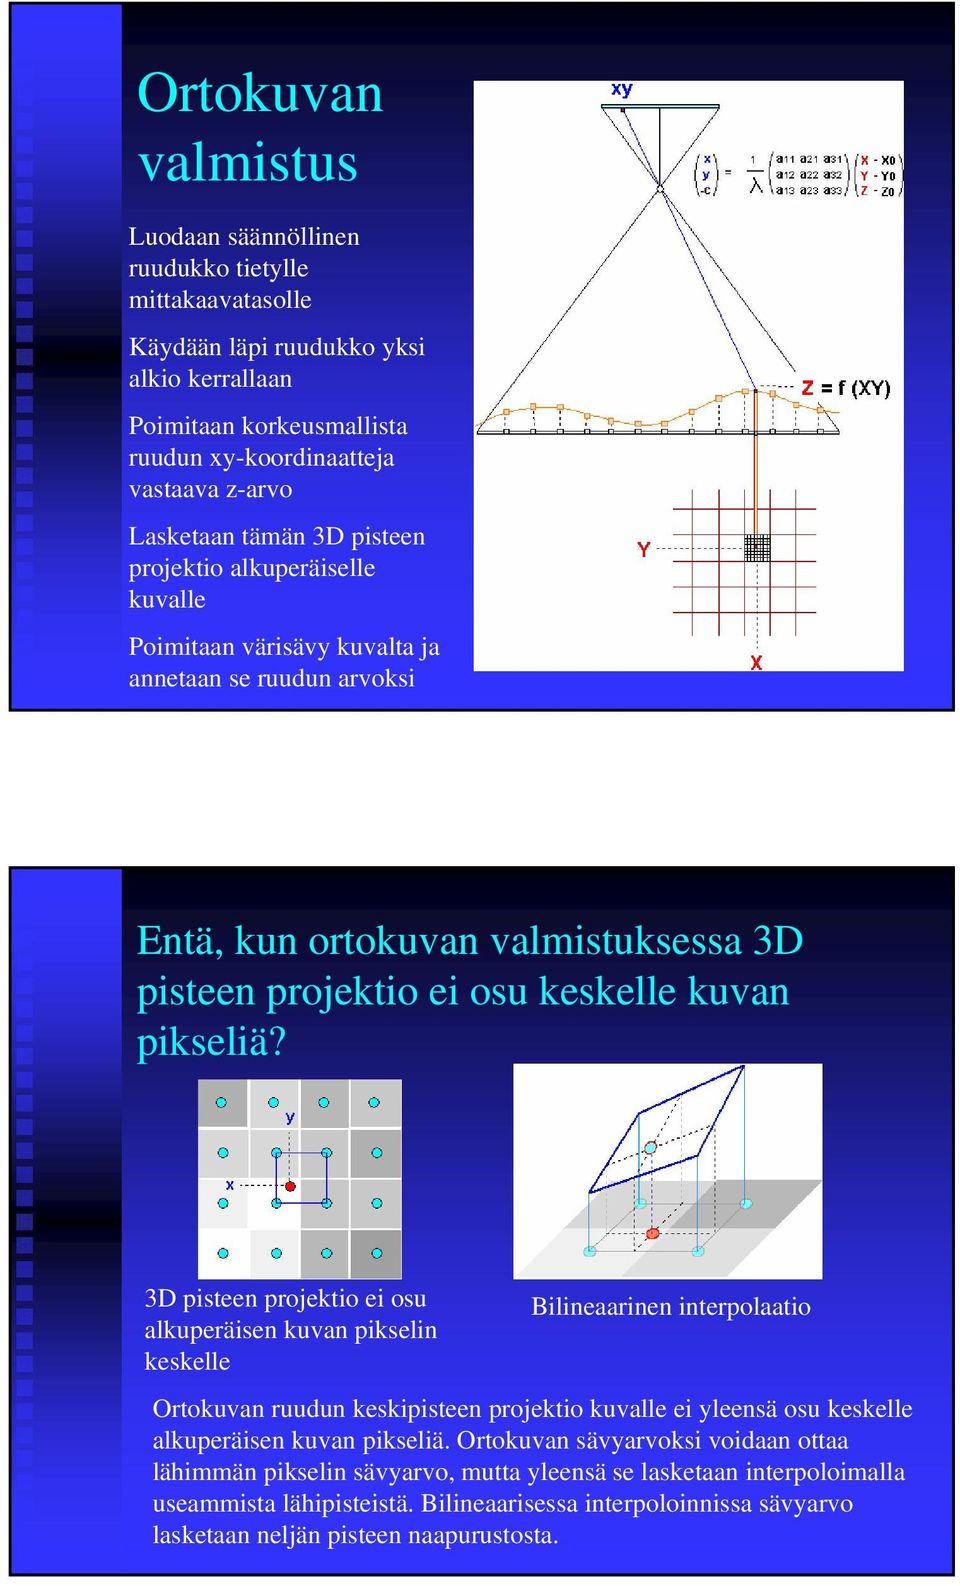 3D pisteen projektio ei osu alkuperäisen kuvan pikselin keskelle Bilineaarinen interpolaatio Ortokuvan ruudun keskipisteen projektio kuvalle ei yleensä osu keskelle alkuperäisen kuvan pikseliä.